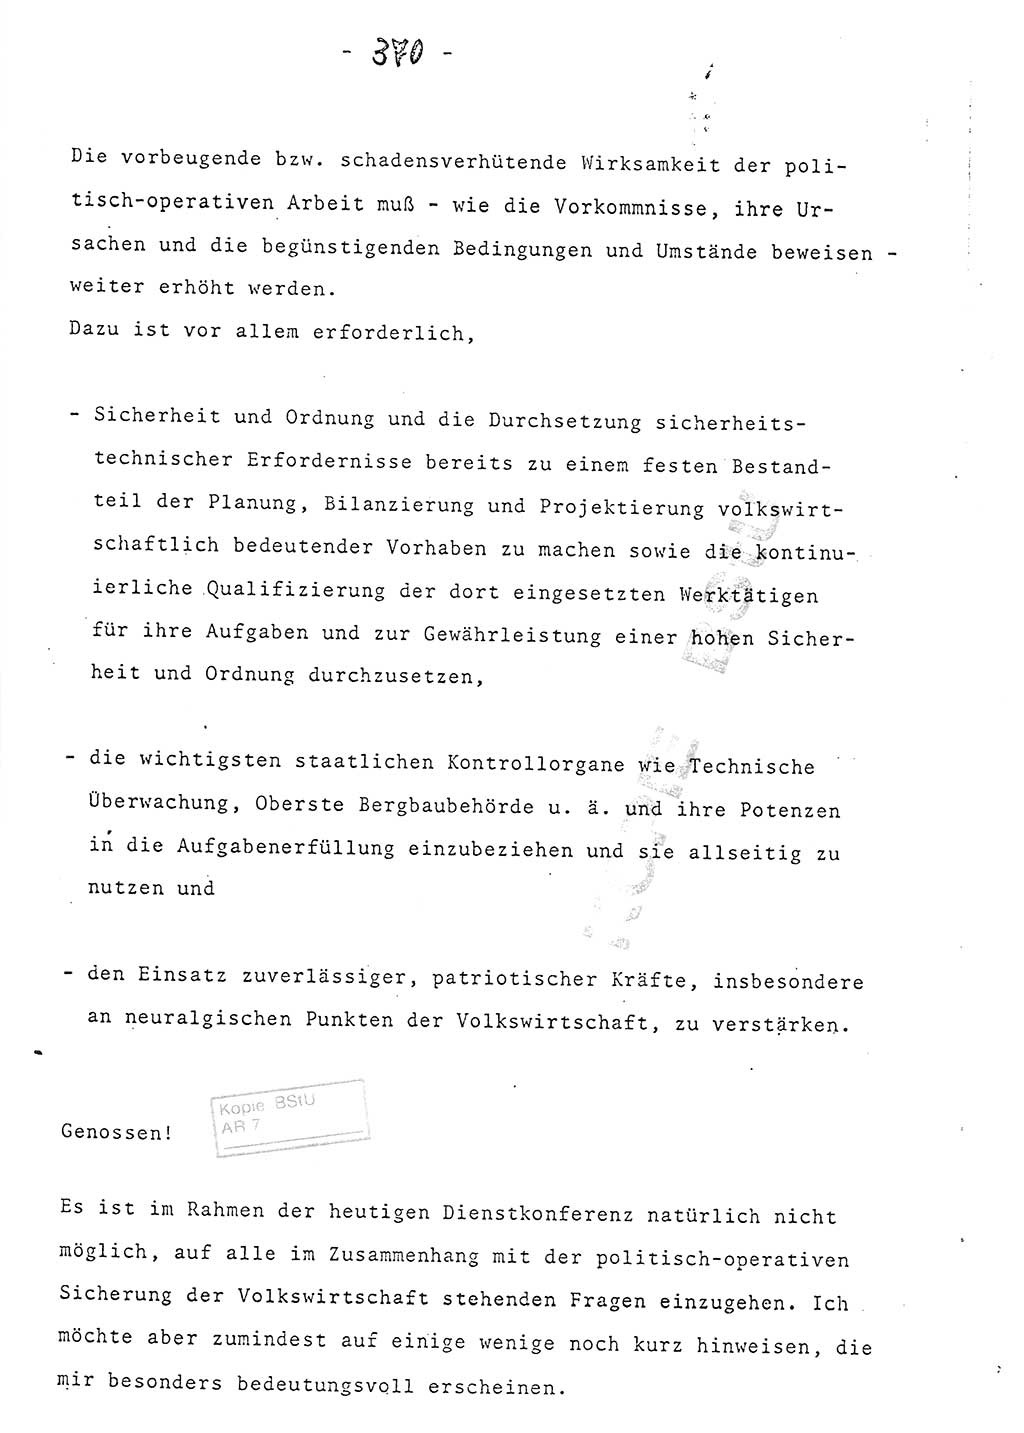 Referat (Entwurf) des Genossen Minister (Generaloberst Erich Mielke) auf der Dienstkonferenz 1972, Ministerium für Staatssicherheit (MfS) [Deutsche Demokratische Republik (DDR)], Der Minister, Geheime Verschlußsache (GVS) 008-150/72, Berlin 25.2.1972, Seite 370 (Ref. Entw. DK MfS DDR Min. GVS 008-150/72 1972, S. 370)